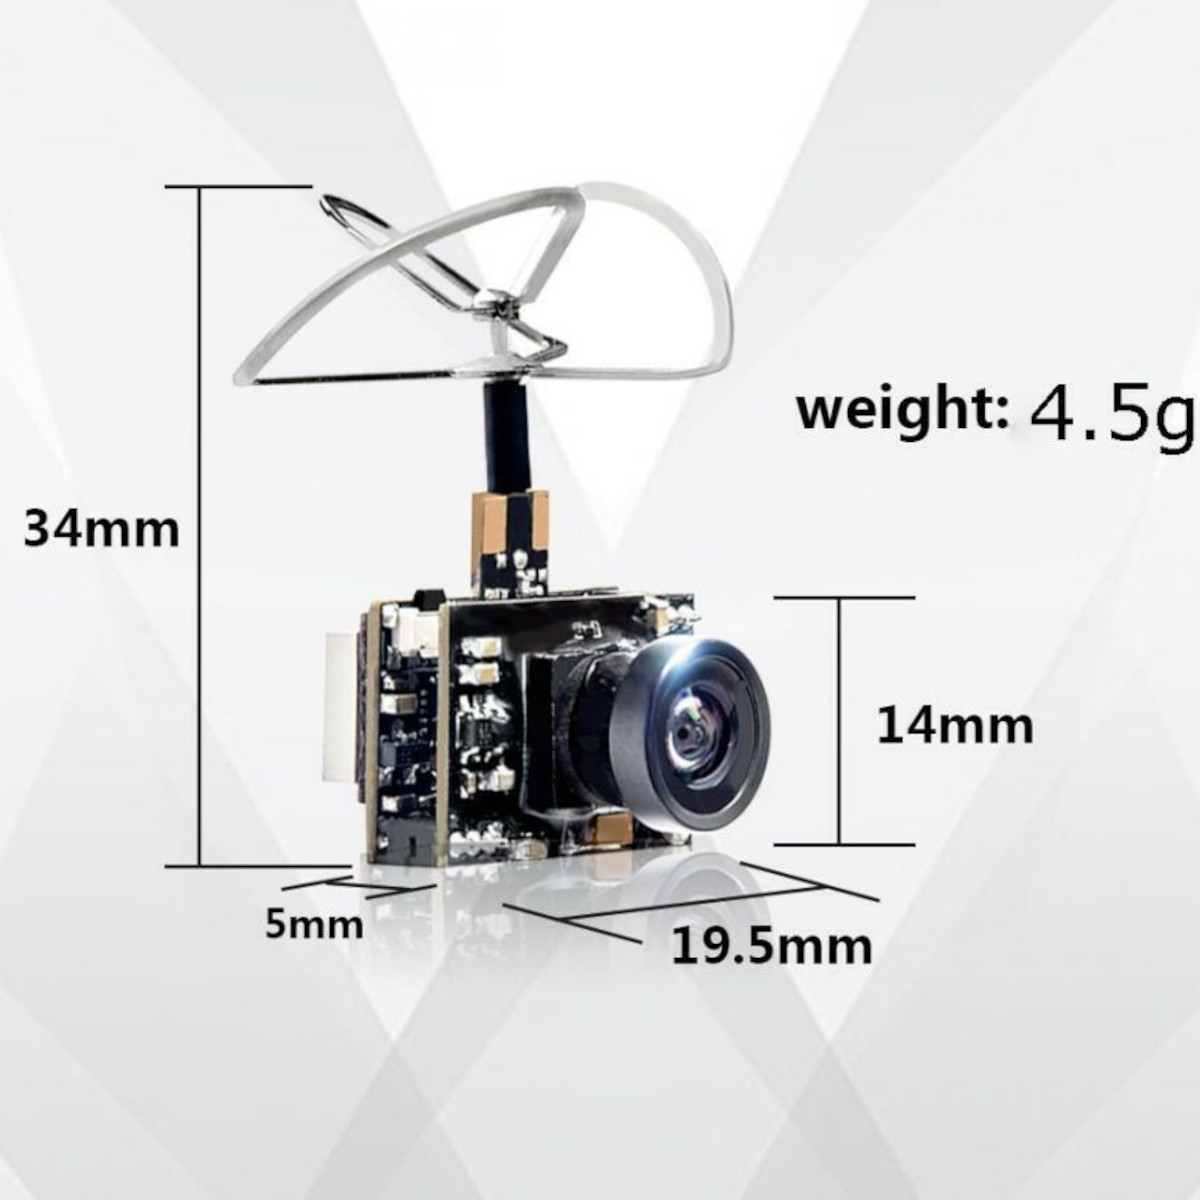 FPV Camera - Dimensions